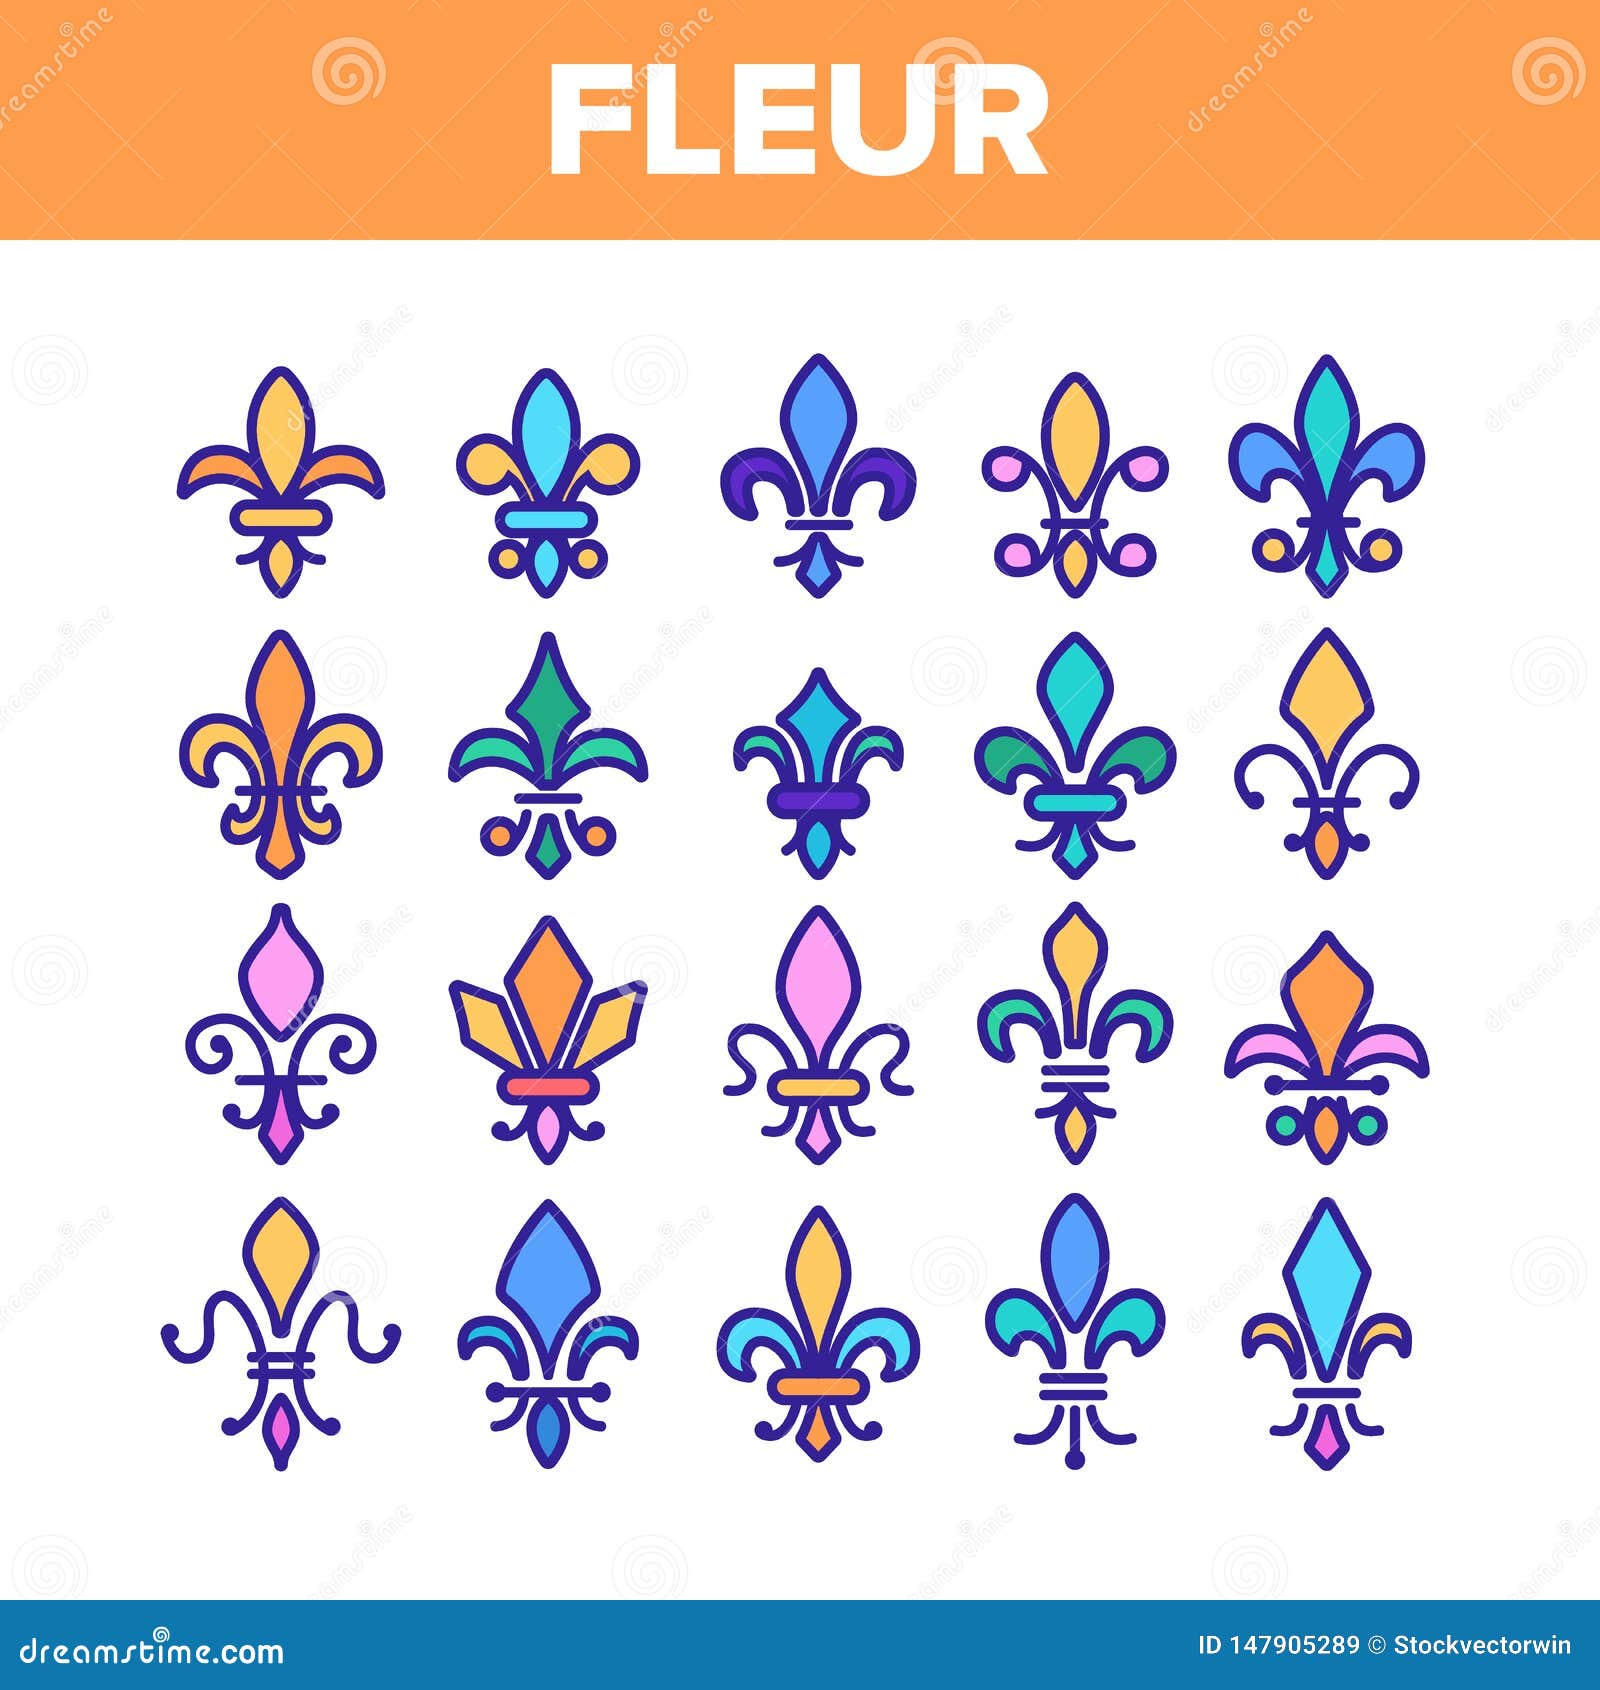 Fleur De Lys, Royalty Linear Vector Icons Set Stock Vector ...